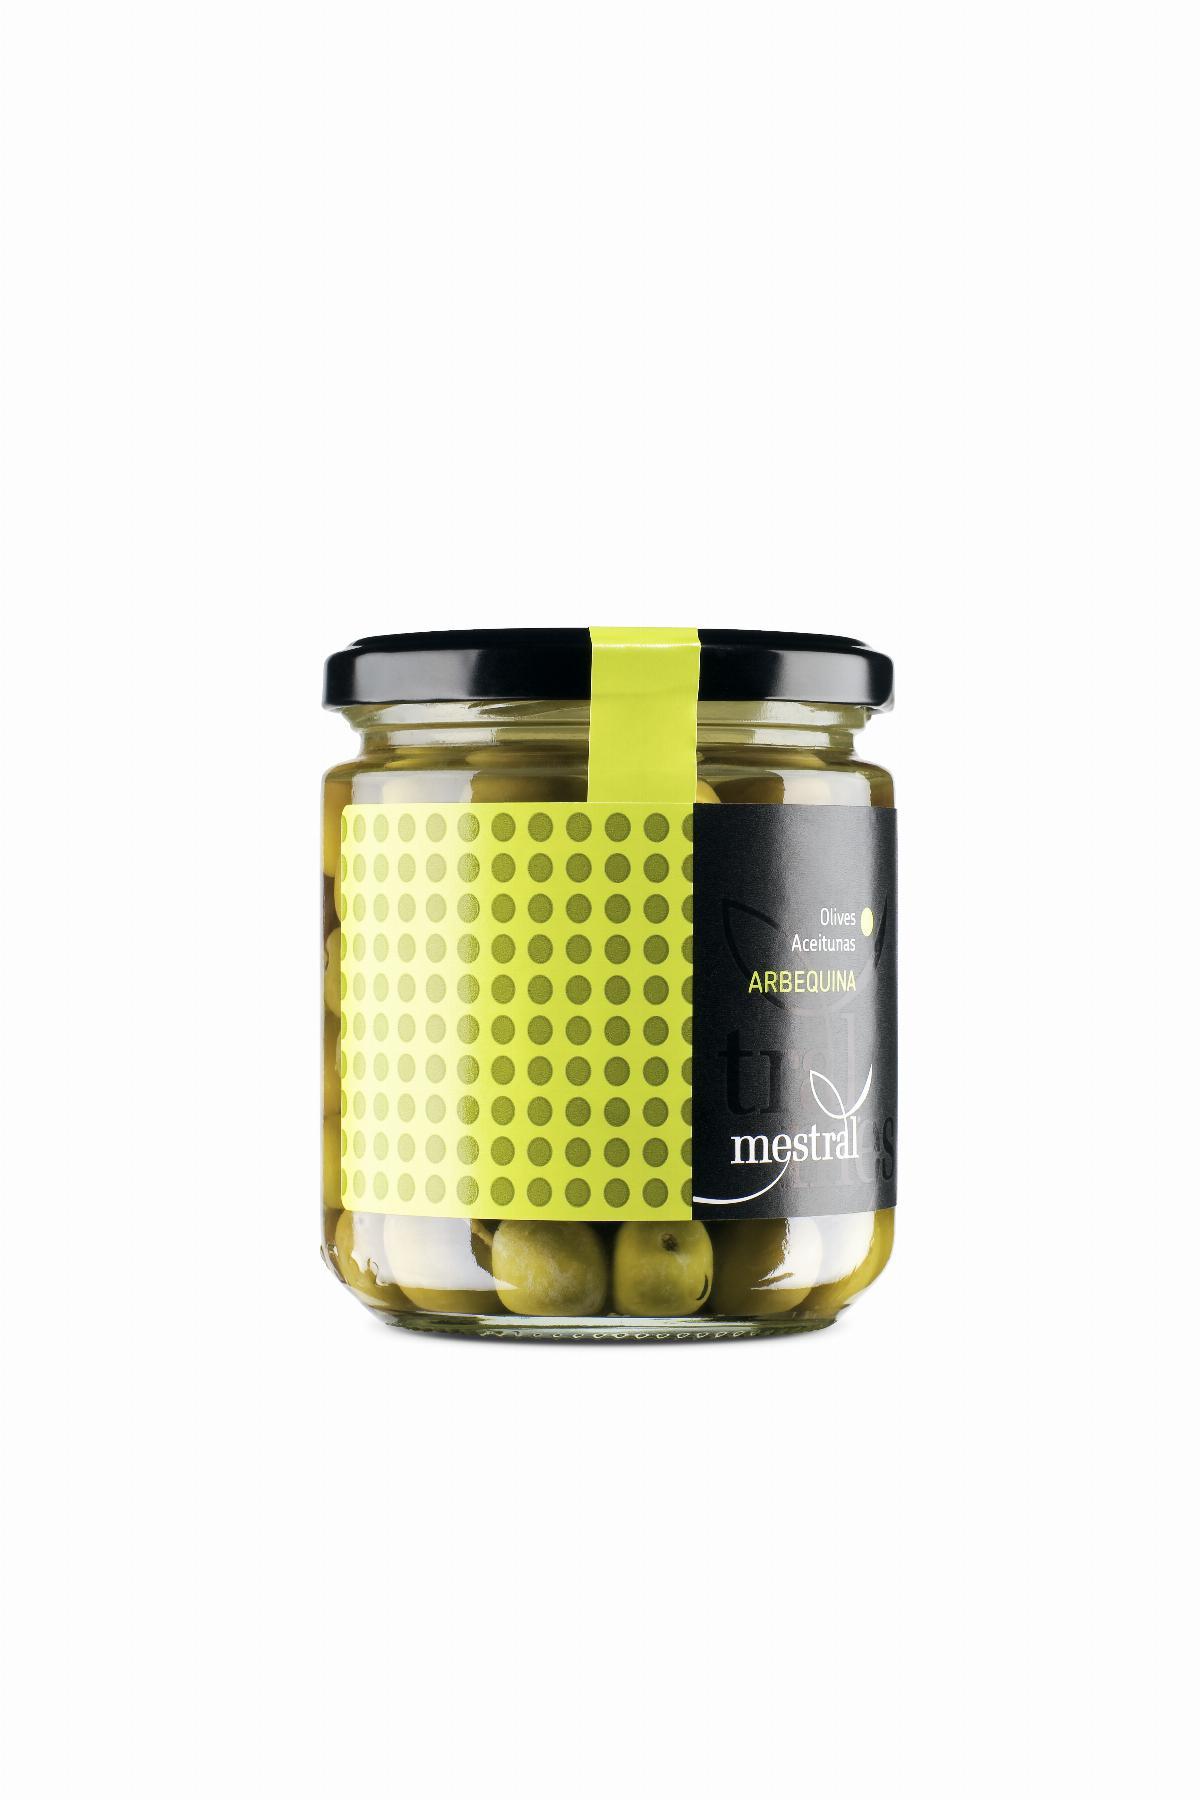 Olives - Olives Arbequines Mestral pot en verre 210g - Mestral Cambrils